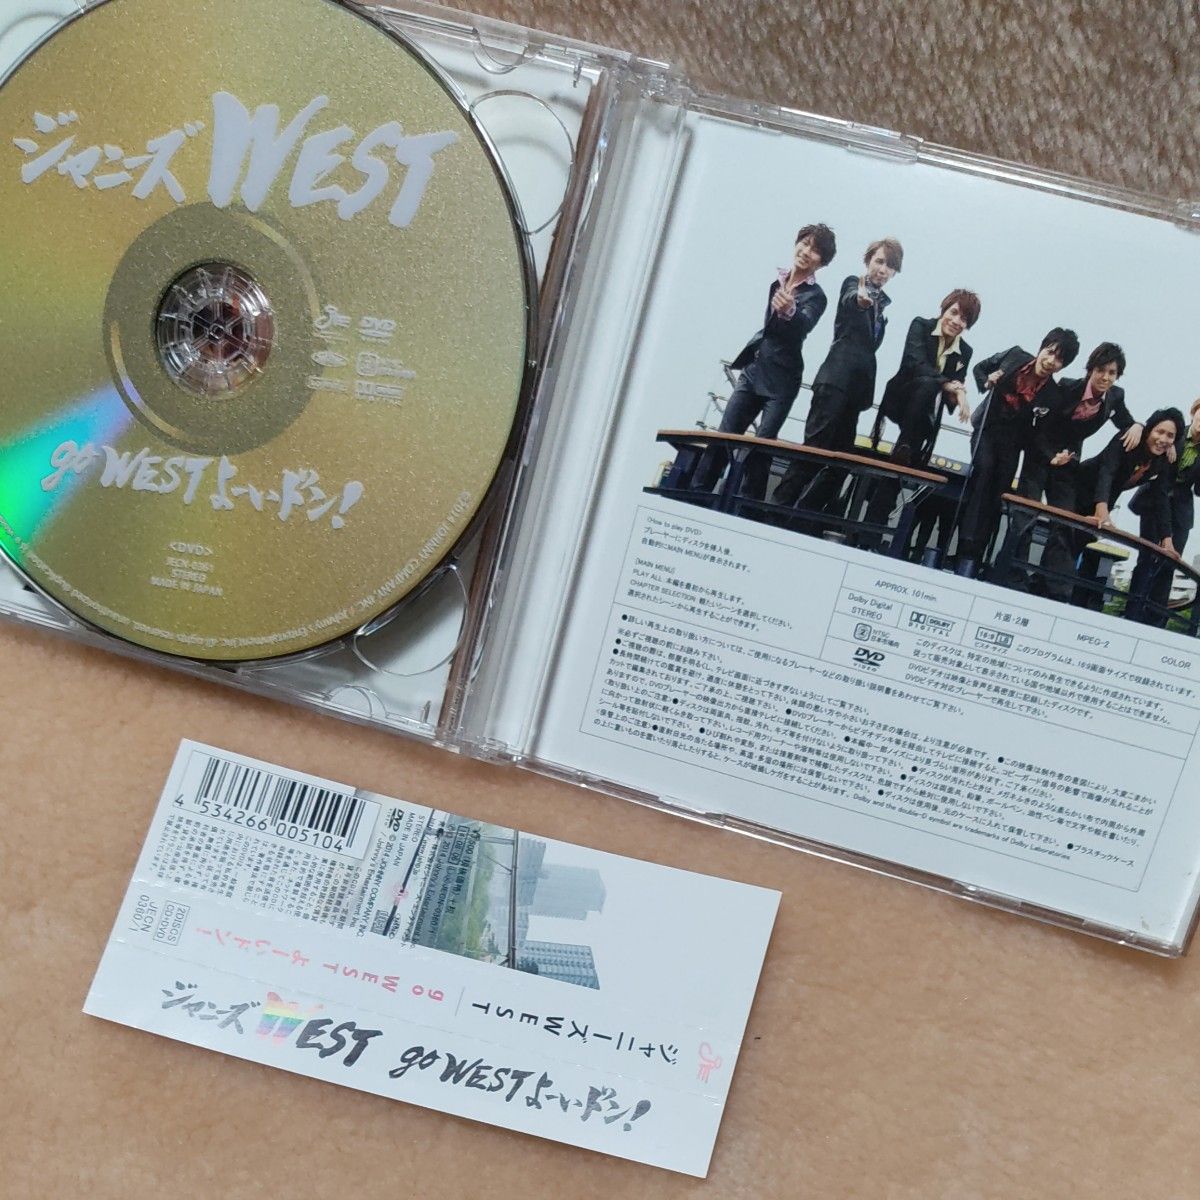 go WEST よーいドン! 初回盤 DVDつき ジャニーズWEST  CD アルバム WEST. JECN-0360/1 帯つき